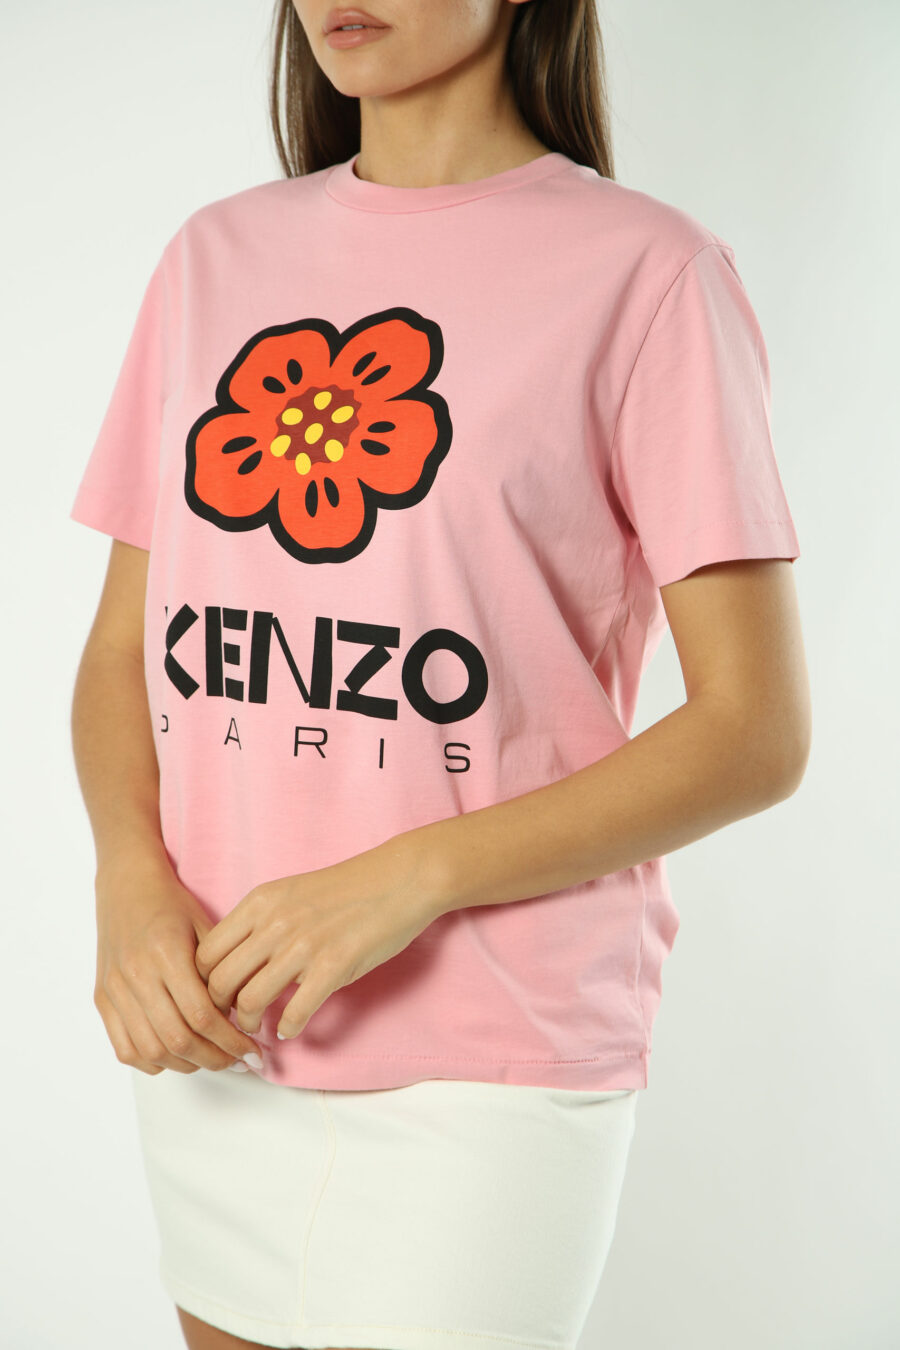 T-shirt rosa com maxilogo de flores laranja - Fotos 1403